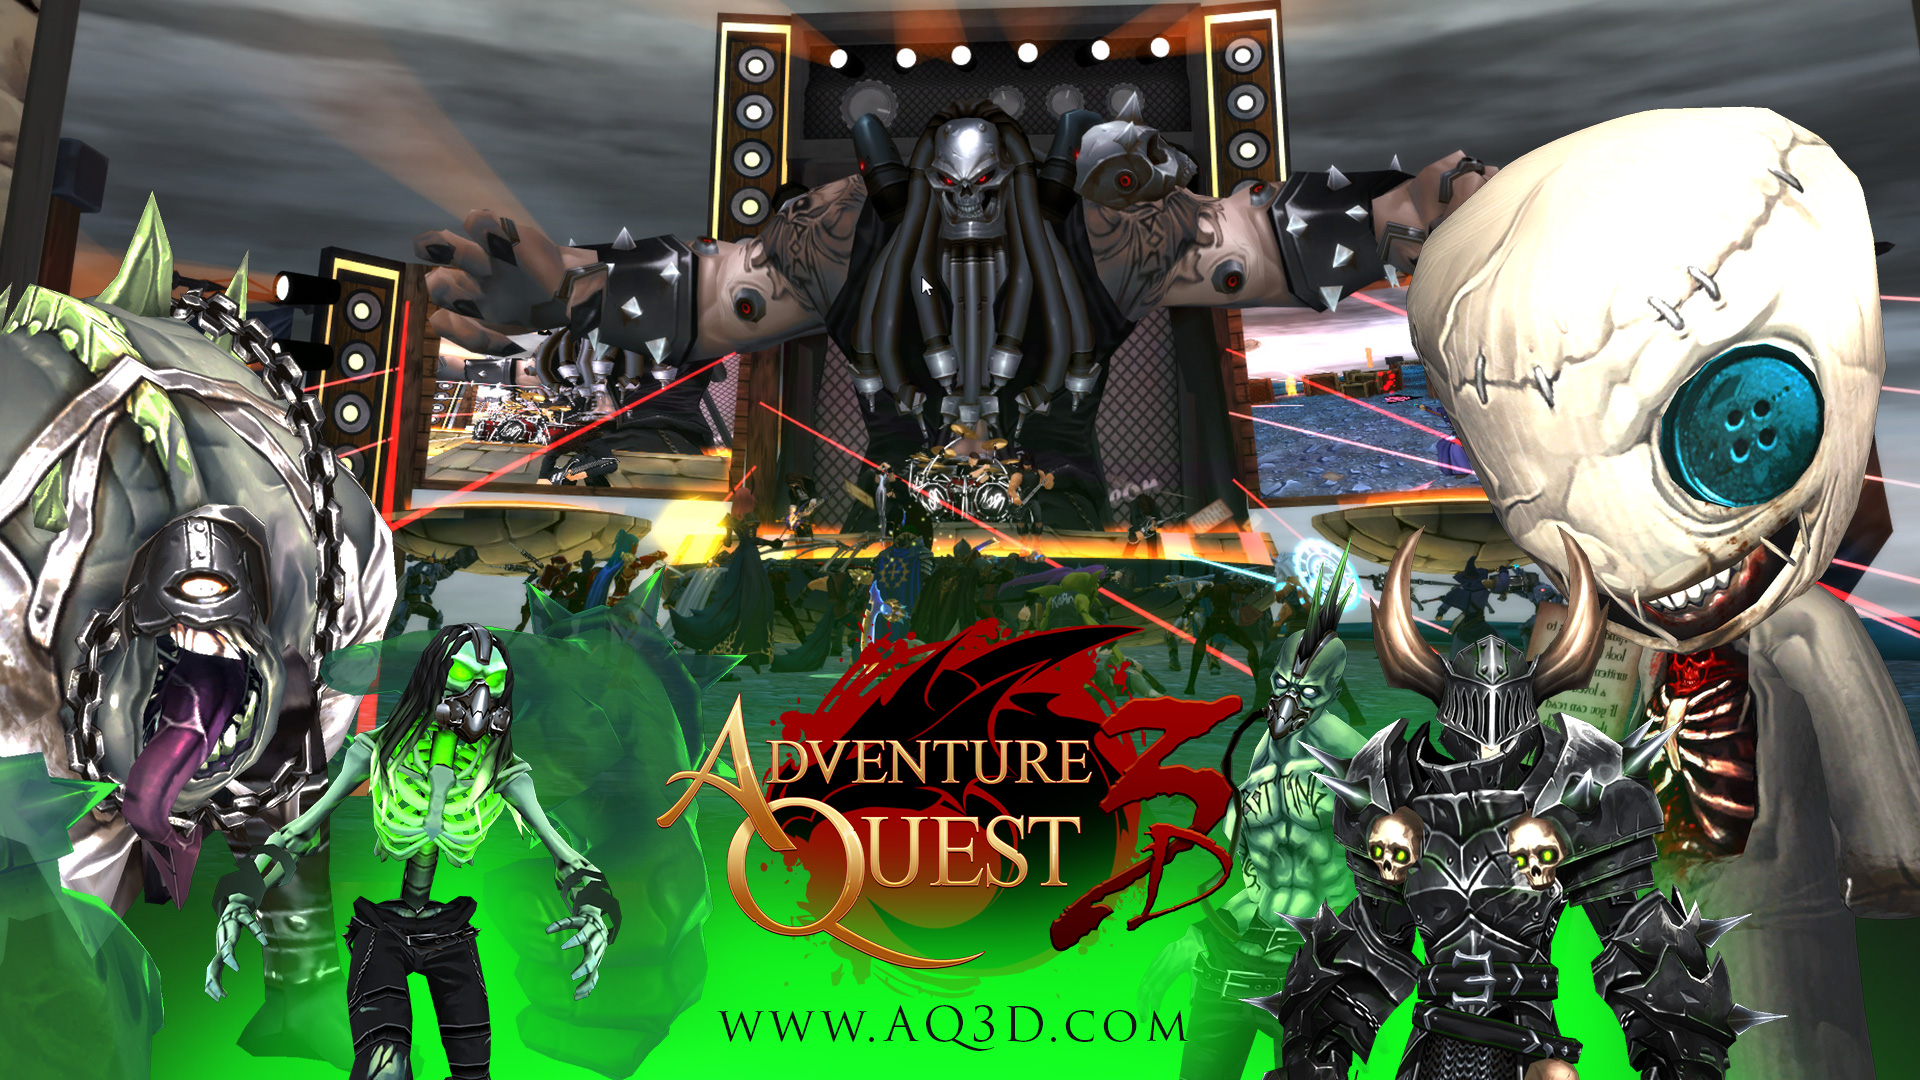 AQ3D Korn Concert